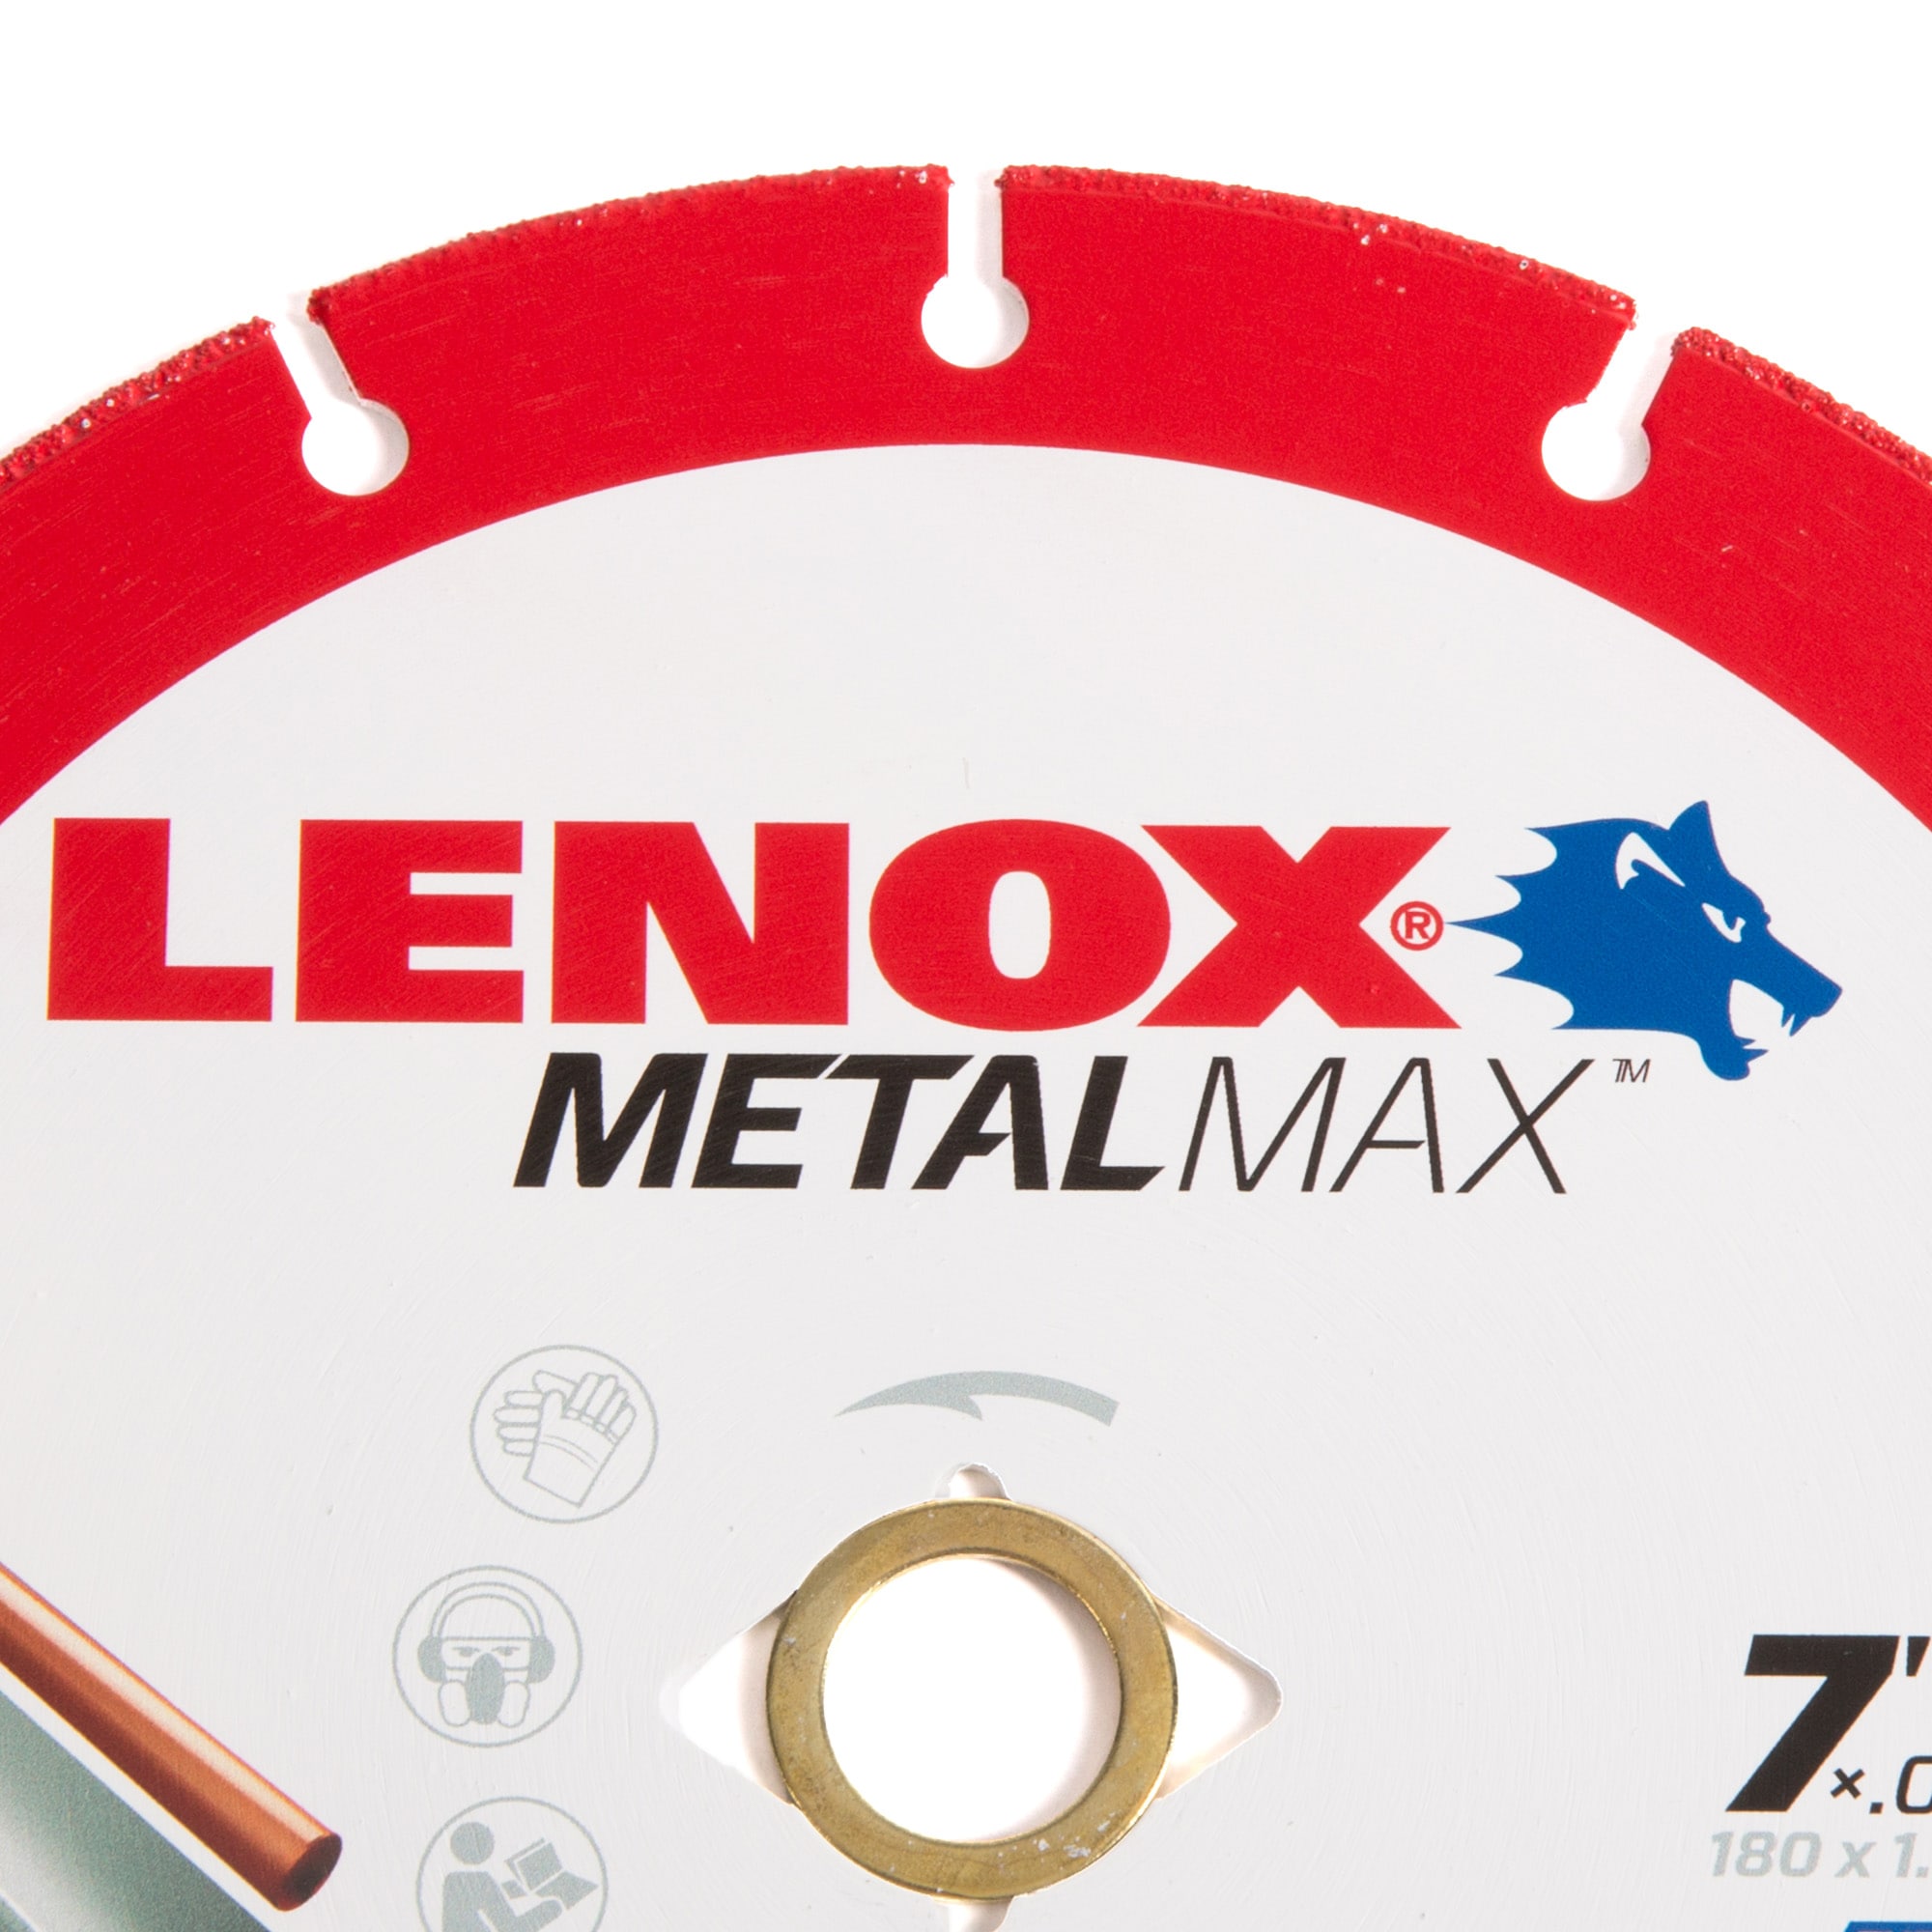 Lenox Metal Max 7" Saw Blade 